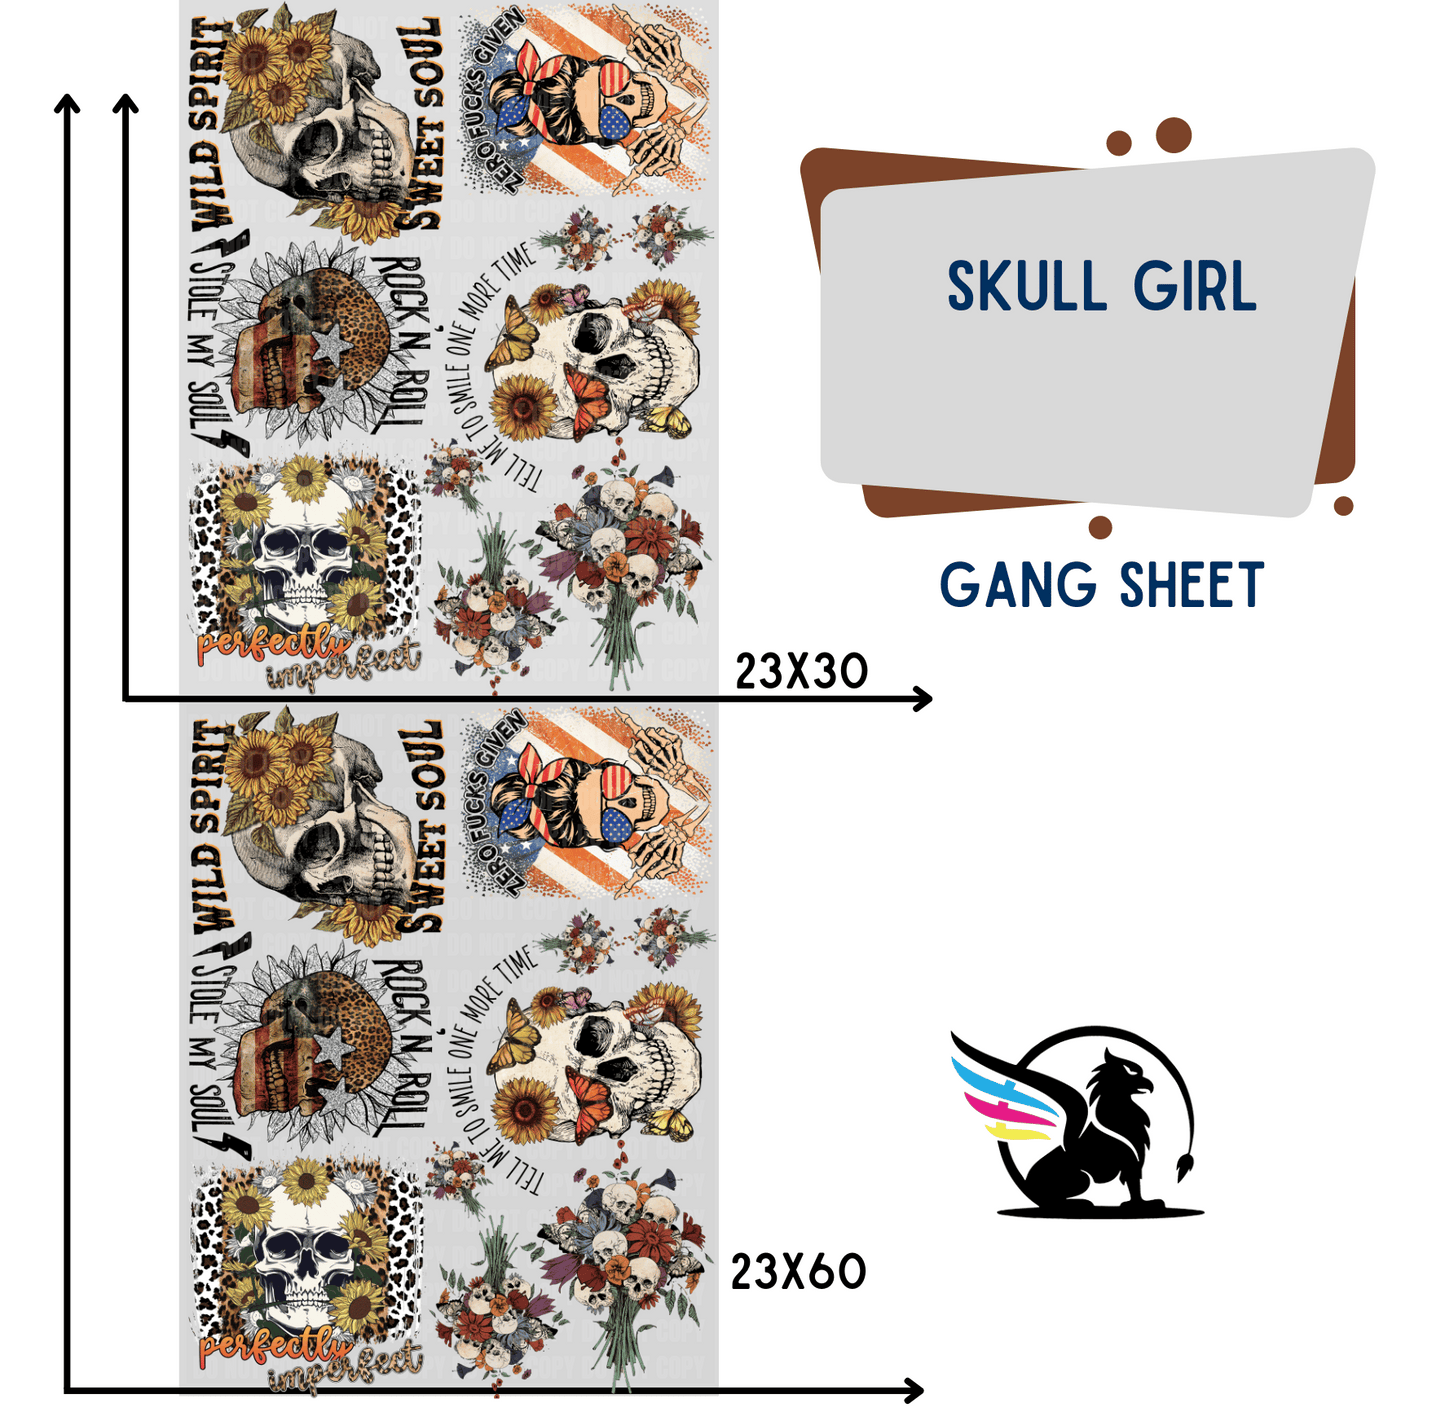 Premade Gang Sheet | Skull Girl